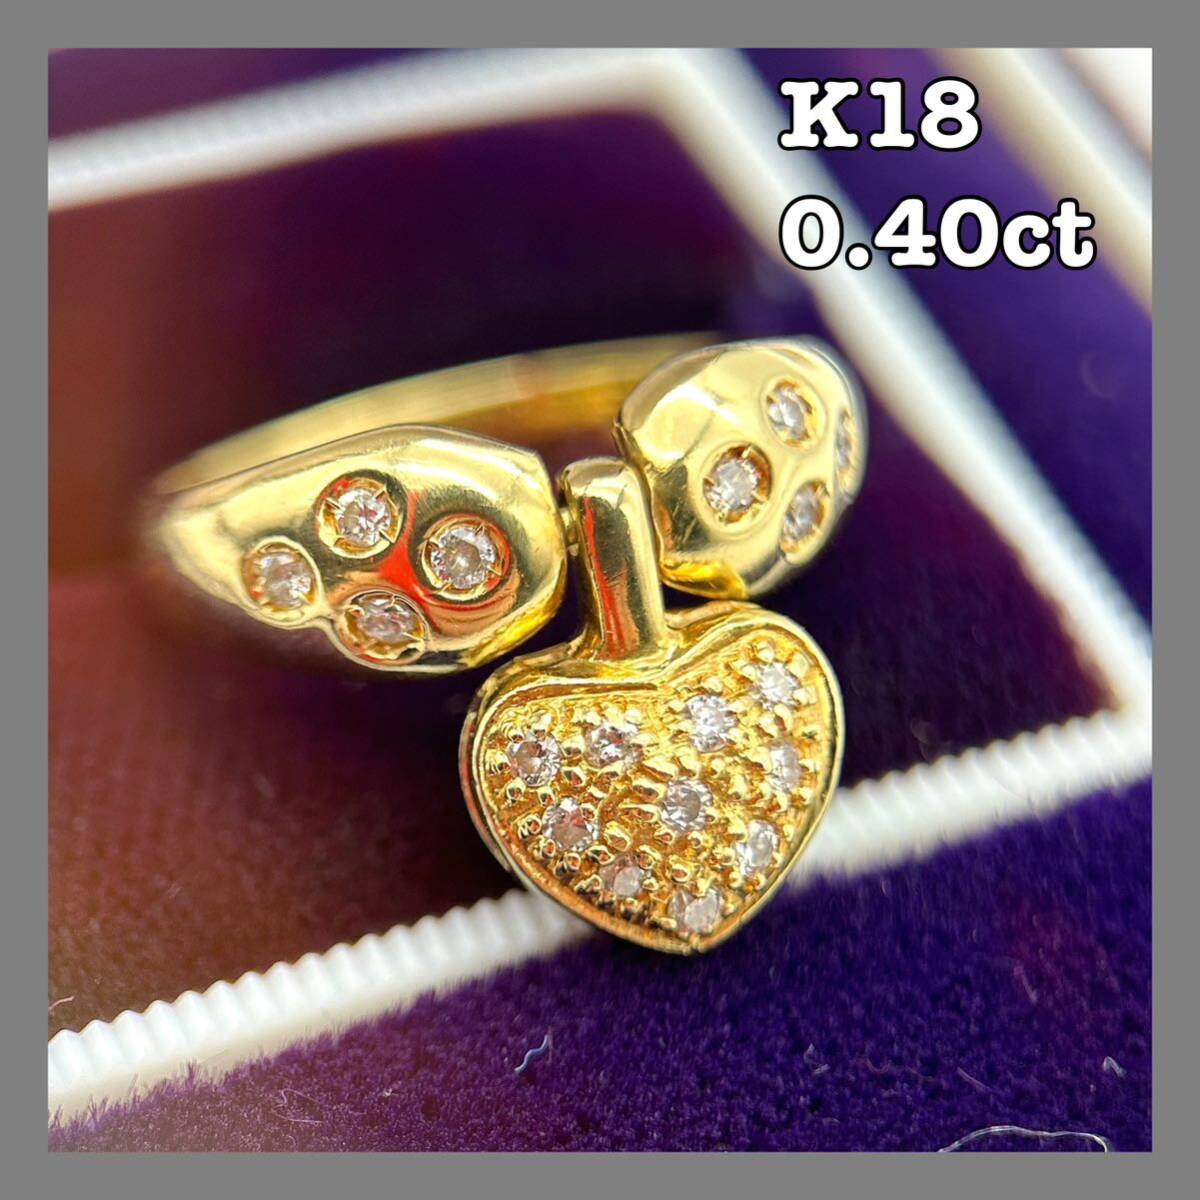 リング K18 750 メレダイヤ 0.40ct ハート型 アクセサリー 指輪 ジュエリー ゴールド 5.25g 12号 中古